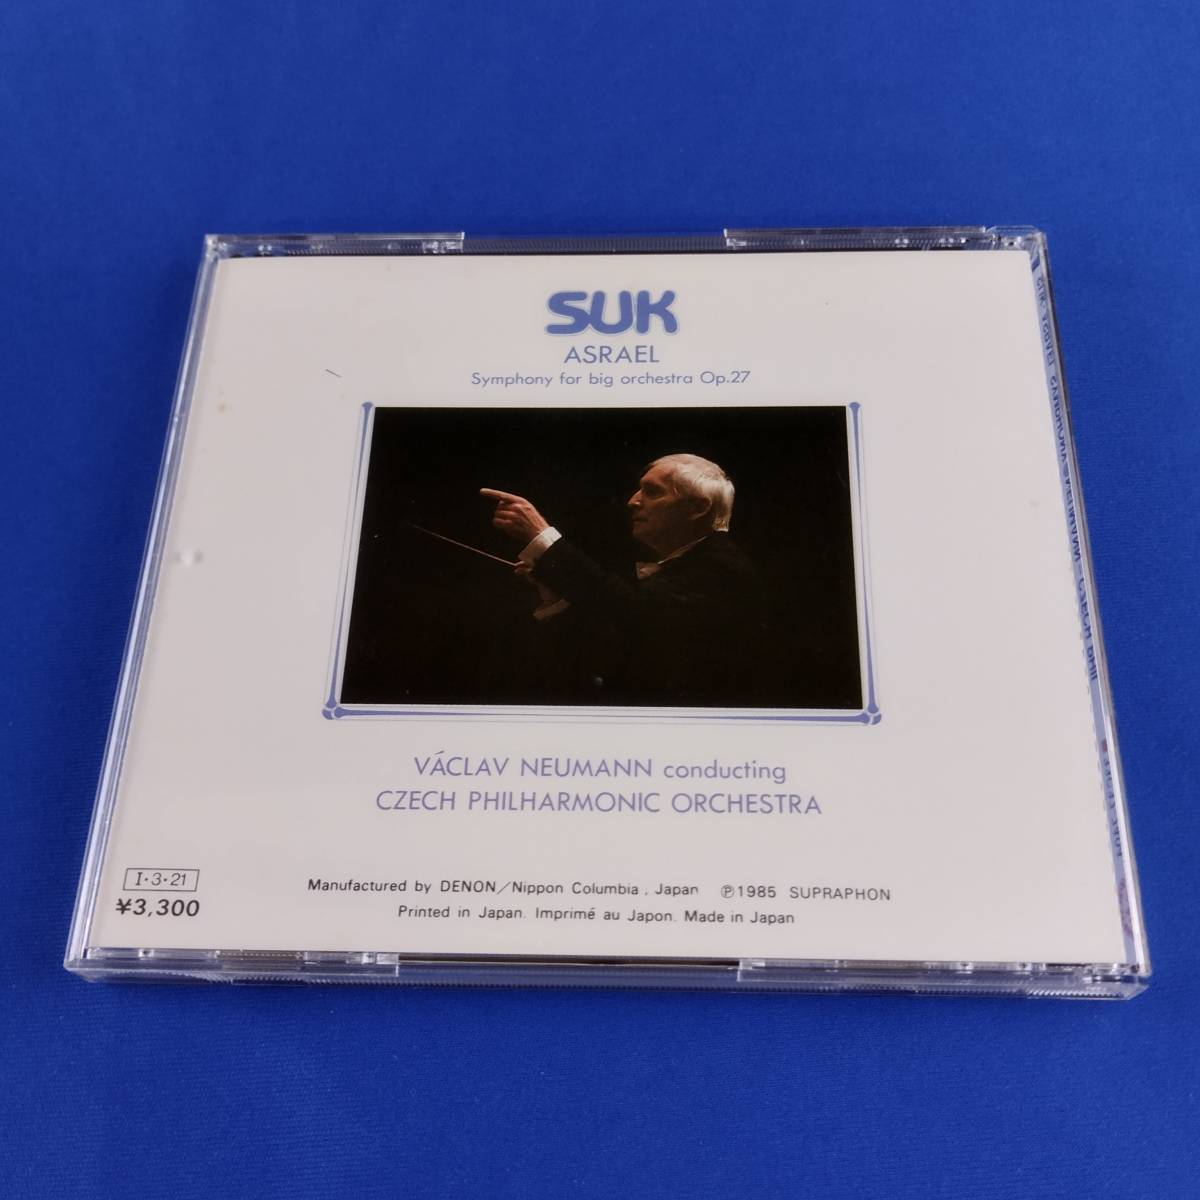 1SC13 CD ヴァーツラフ・ノイマン チェコ・フィルハーモニー管弦楽団 ヨセフ・スーク アスラエル交響曲_画像2